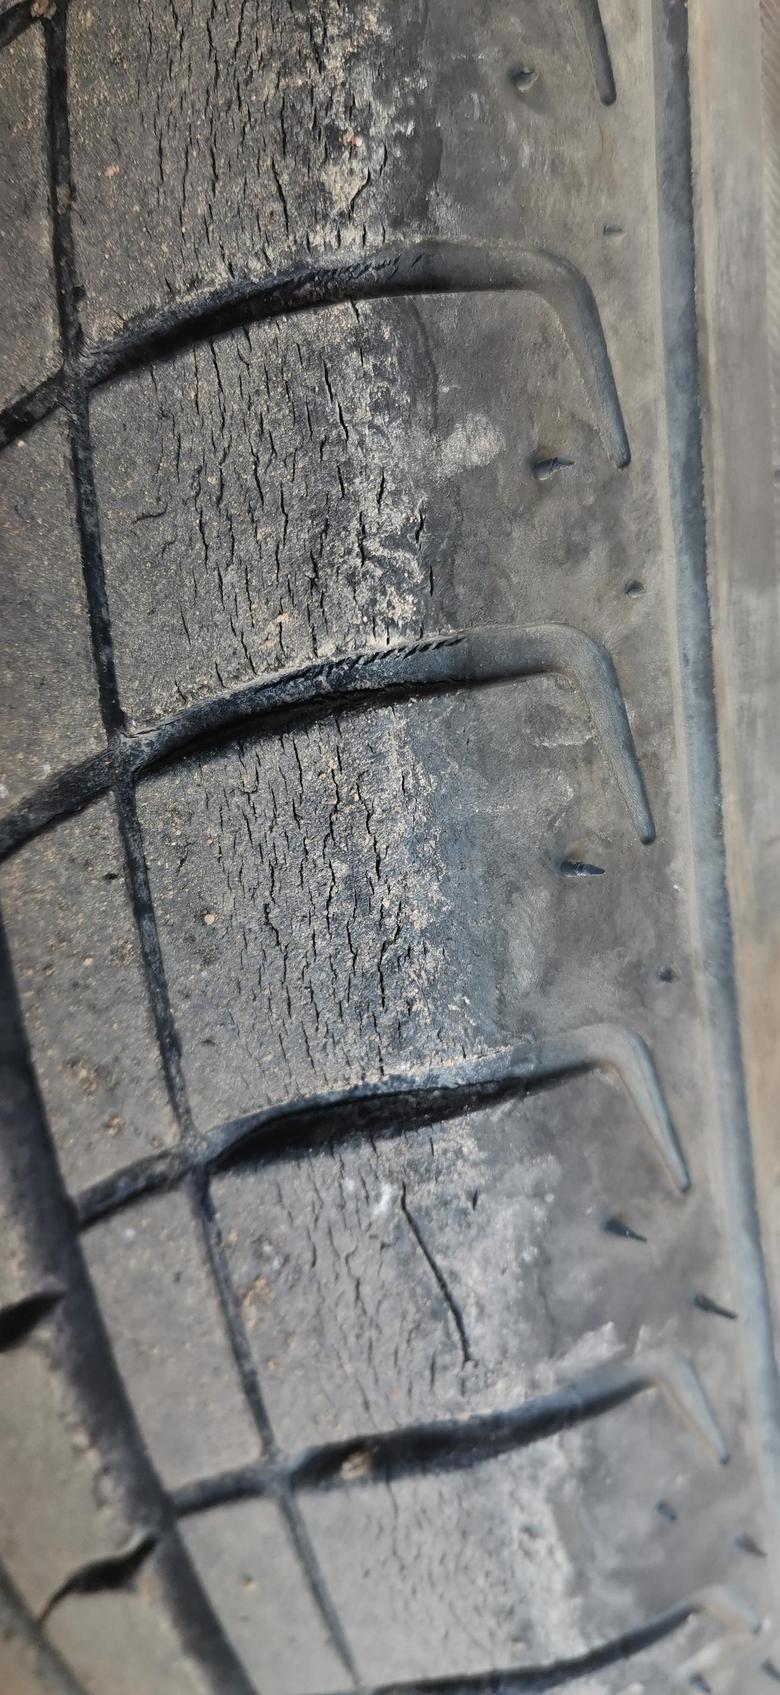 远景轮胎这种裂纹有影响吗？需要更换轮胎吗？